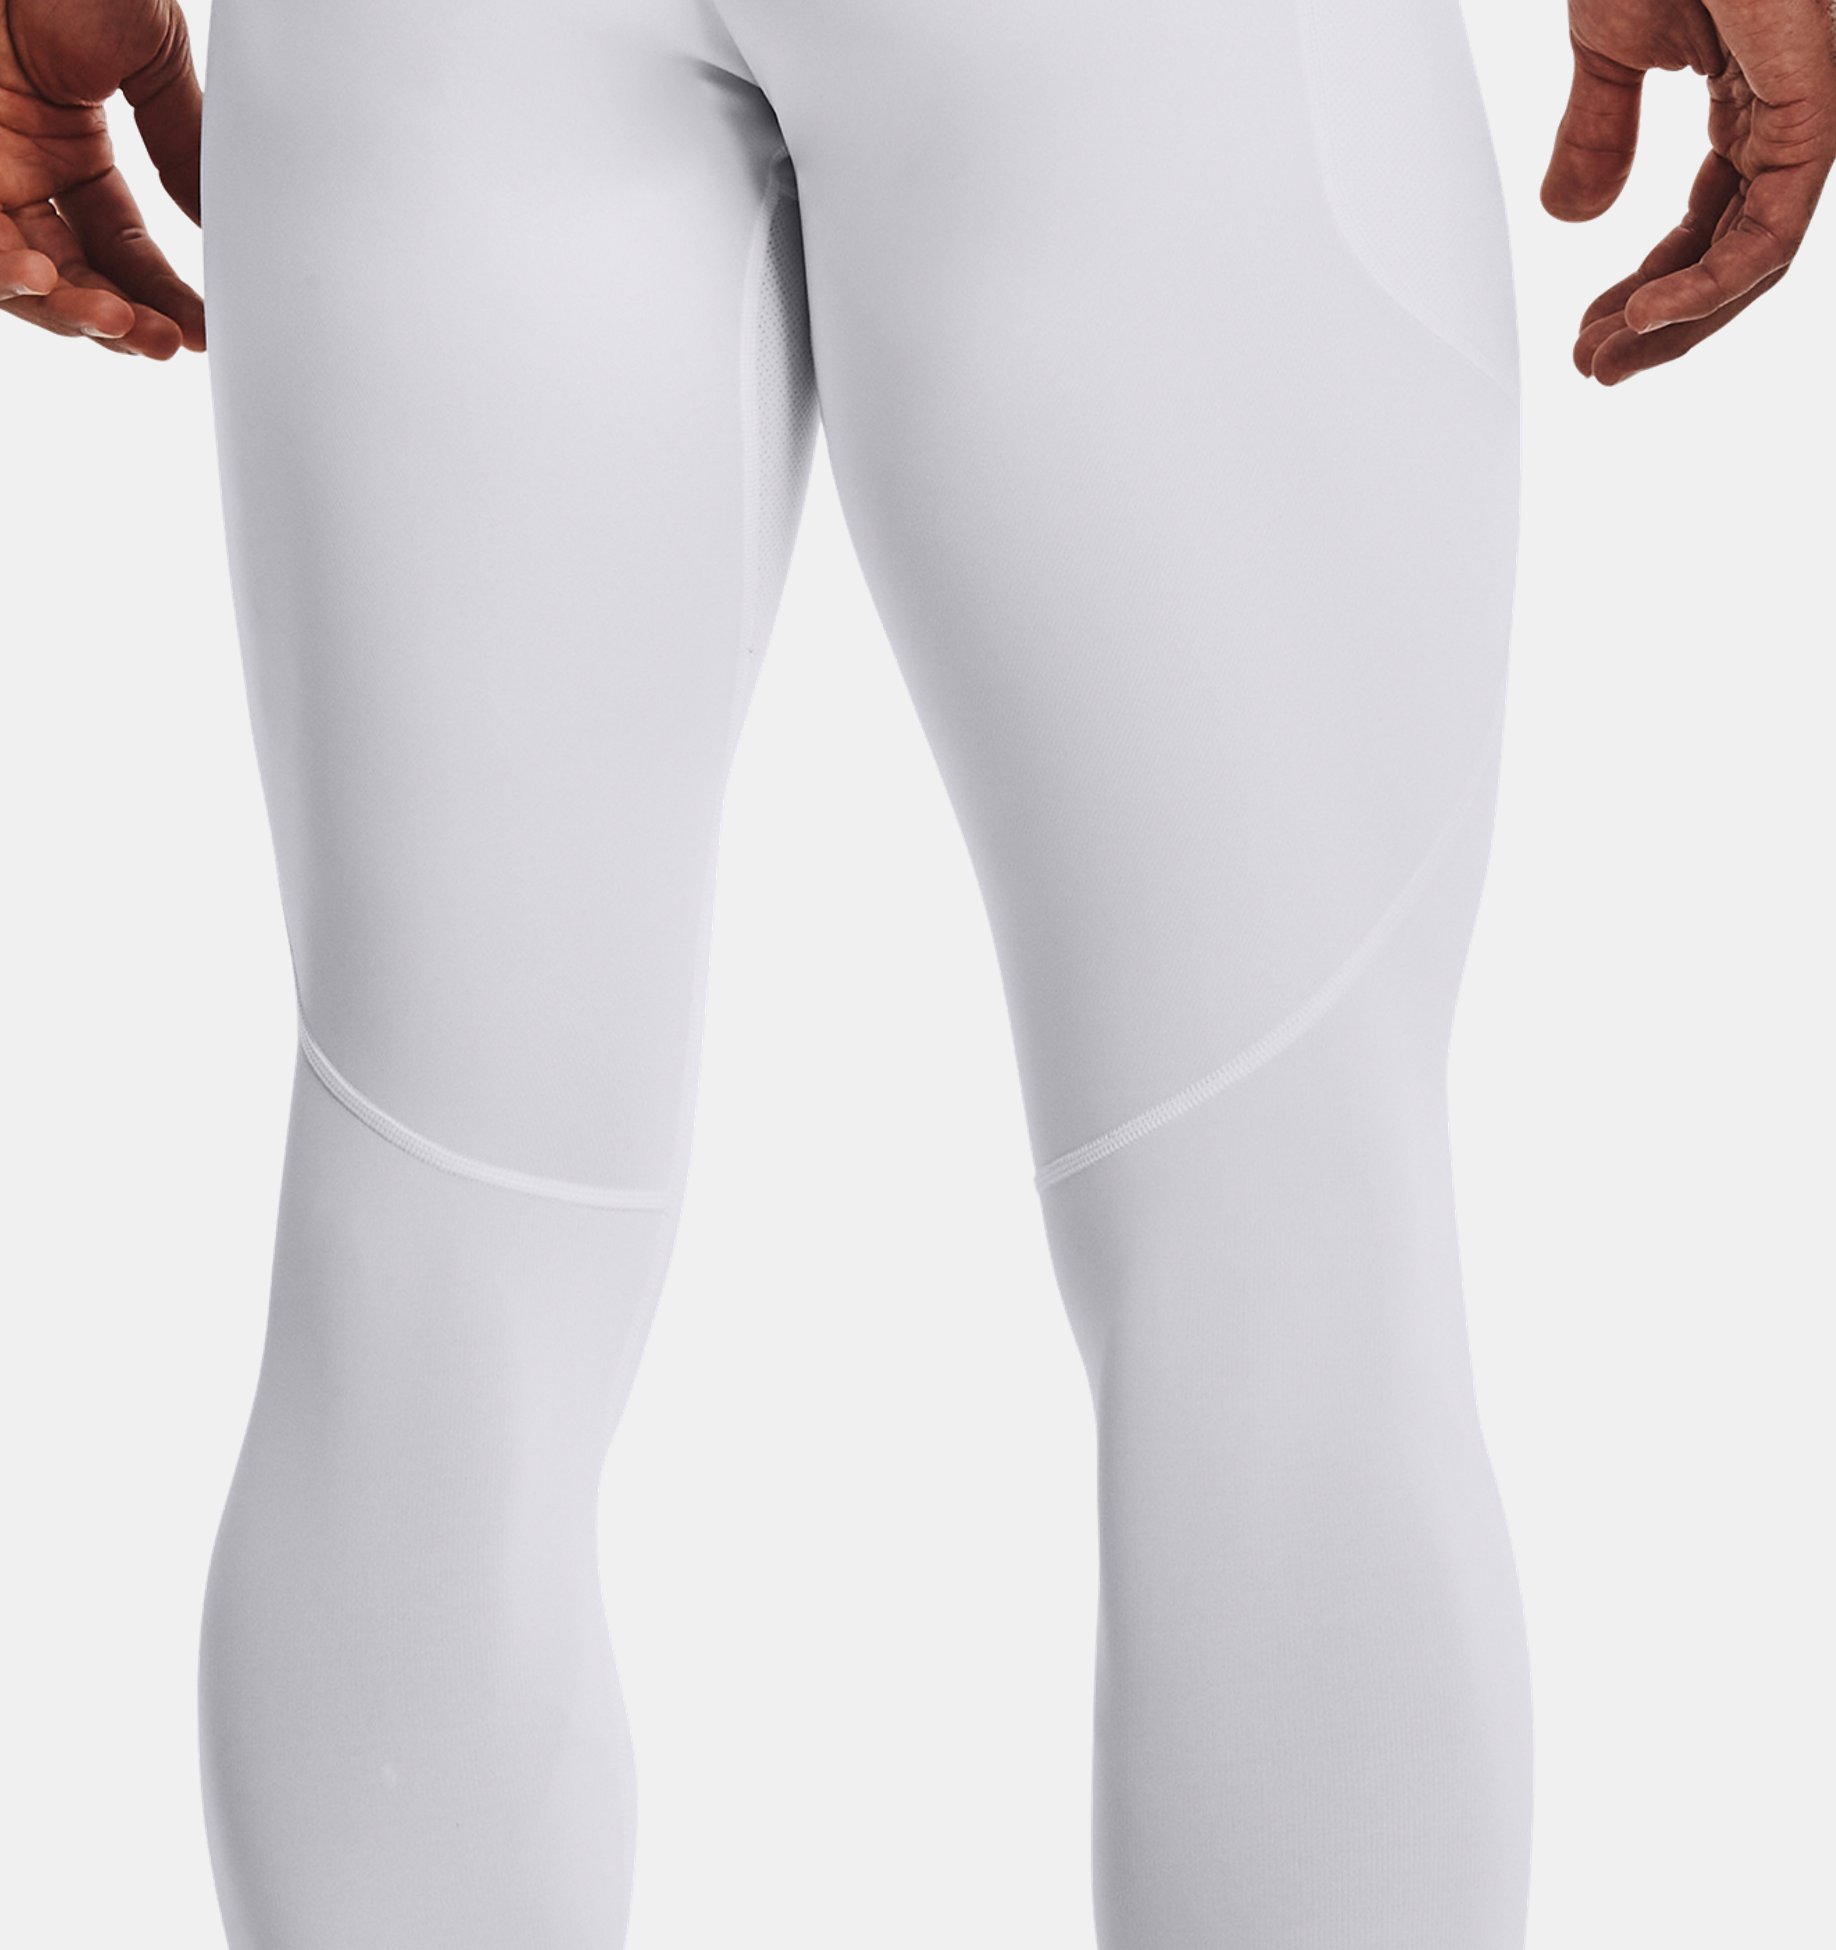 Men's compression leggings UNDER ARMOUR-UA ColdGear Armour Novelty Legging-BLK-1373833-001